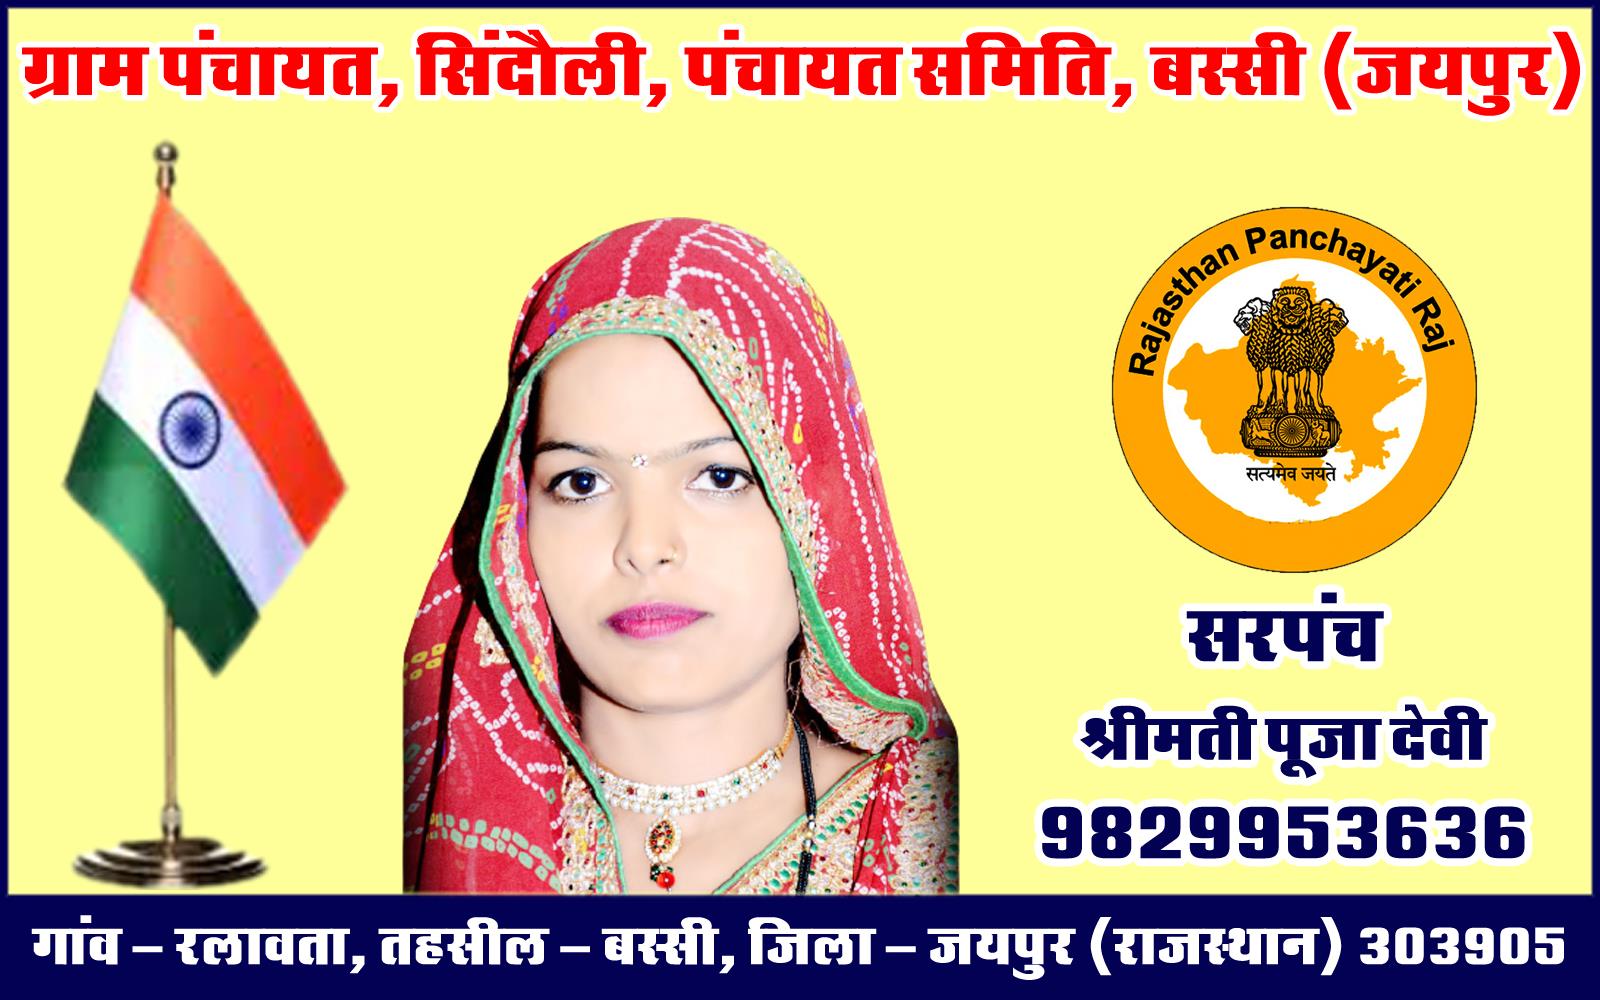 Pooja Devi (Sarpanch - Gram Panchayat Sindoli, Bassi) Jaipur